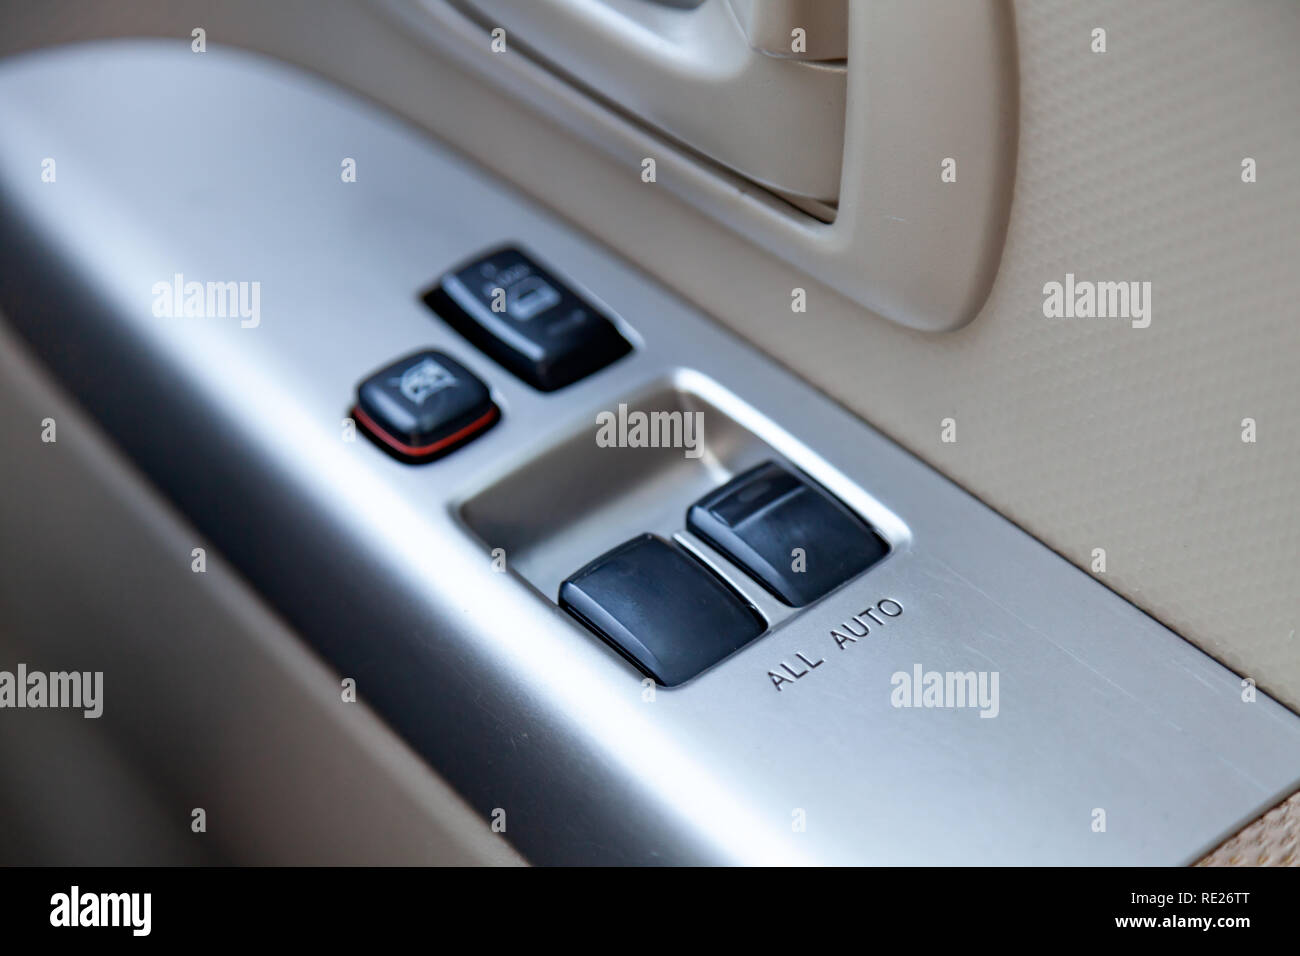 Steuertasten für automatische Öffnung der Auto Fensterheber und  Zentralverriegelung auf einer Fahrzeugtür Stockfotografie - Alamy